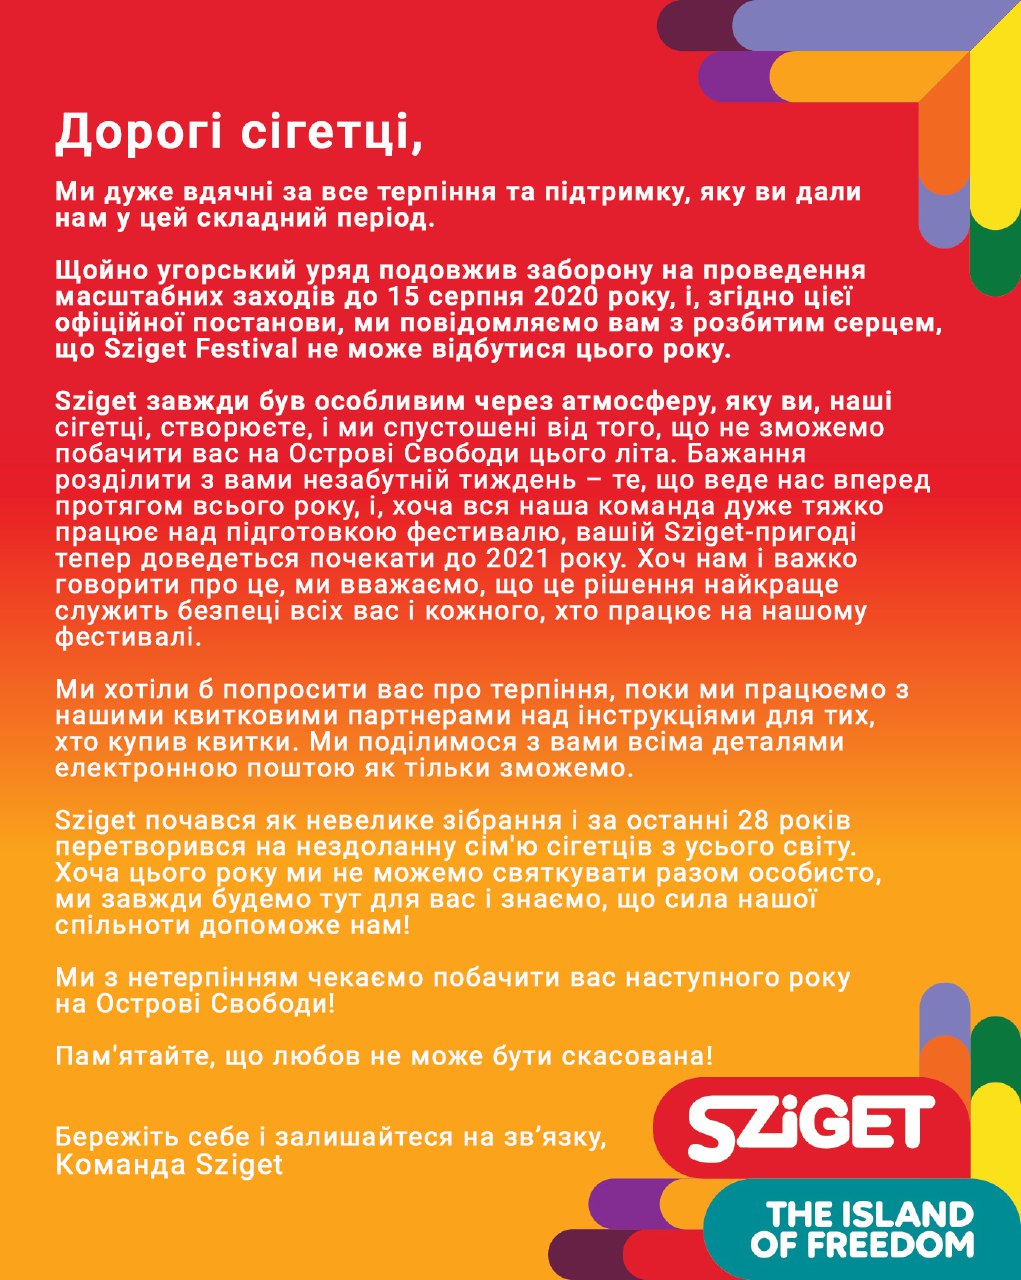 Культовый венгерский фестиваль Sziget отменил программу до 2021 года. Фото: szigetfestival